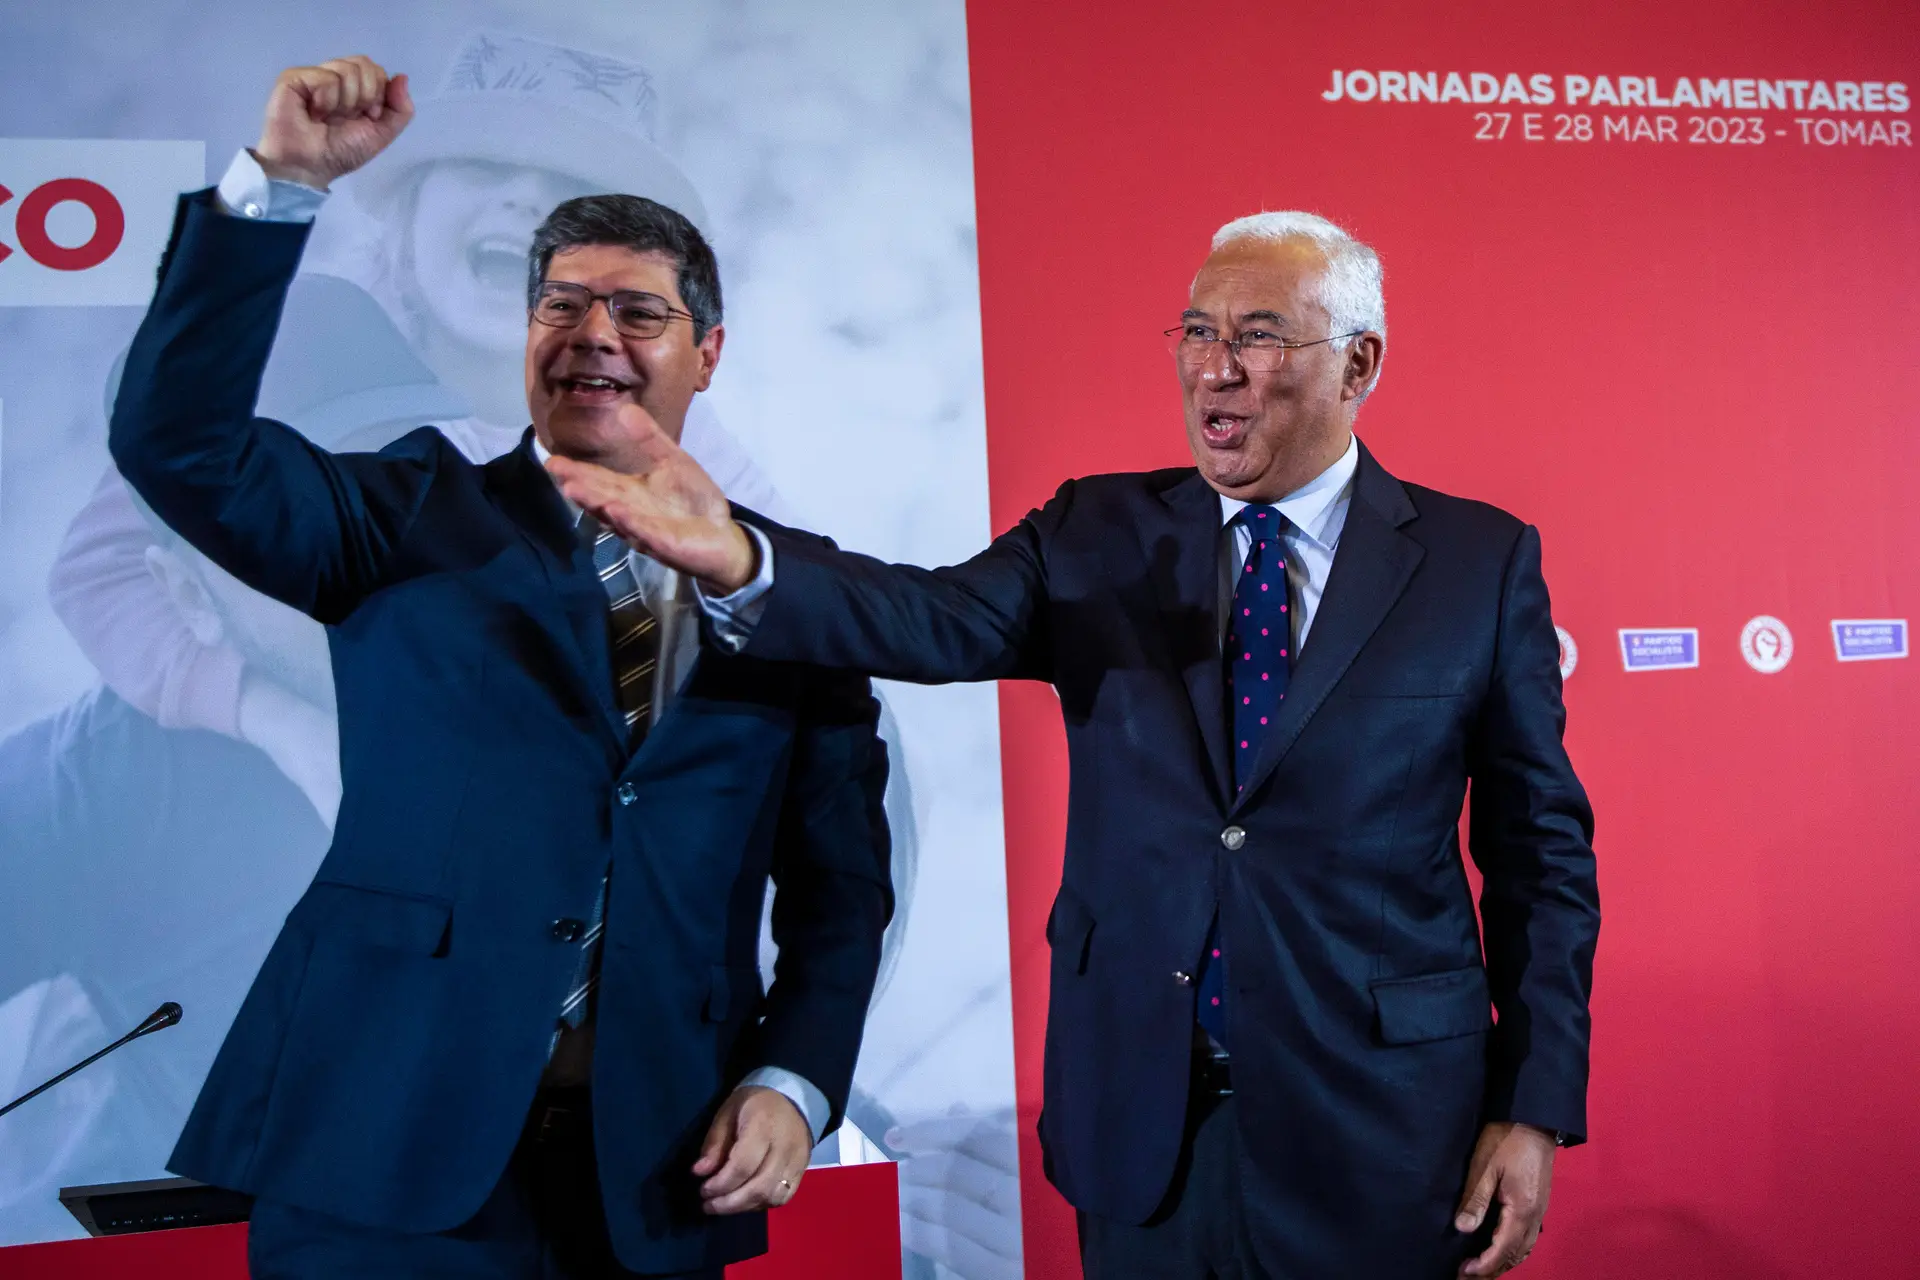 Costa, o "reformista cumpridor da Constituição", remete para o Parlamento alterações à política de habitação